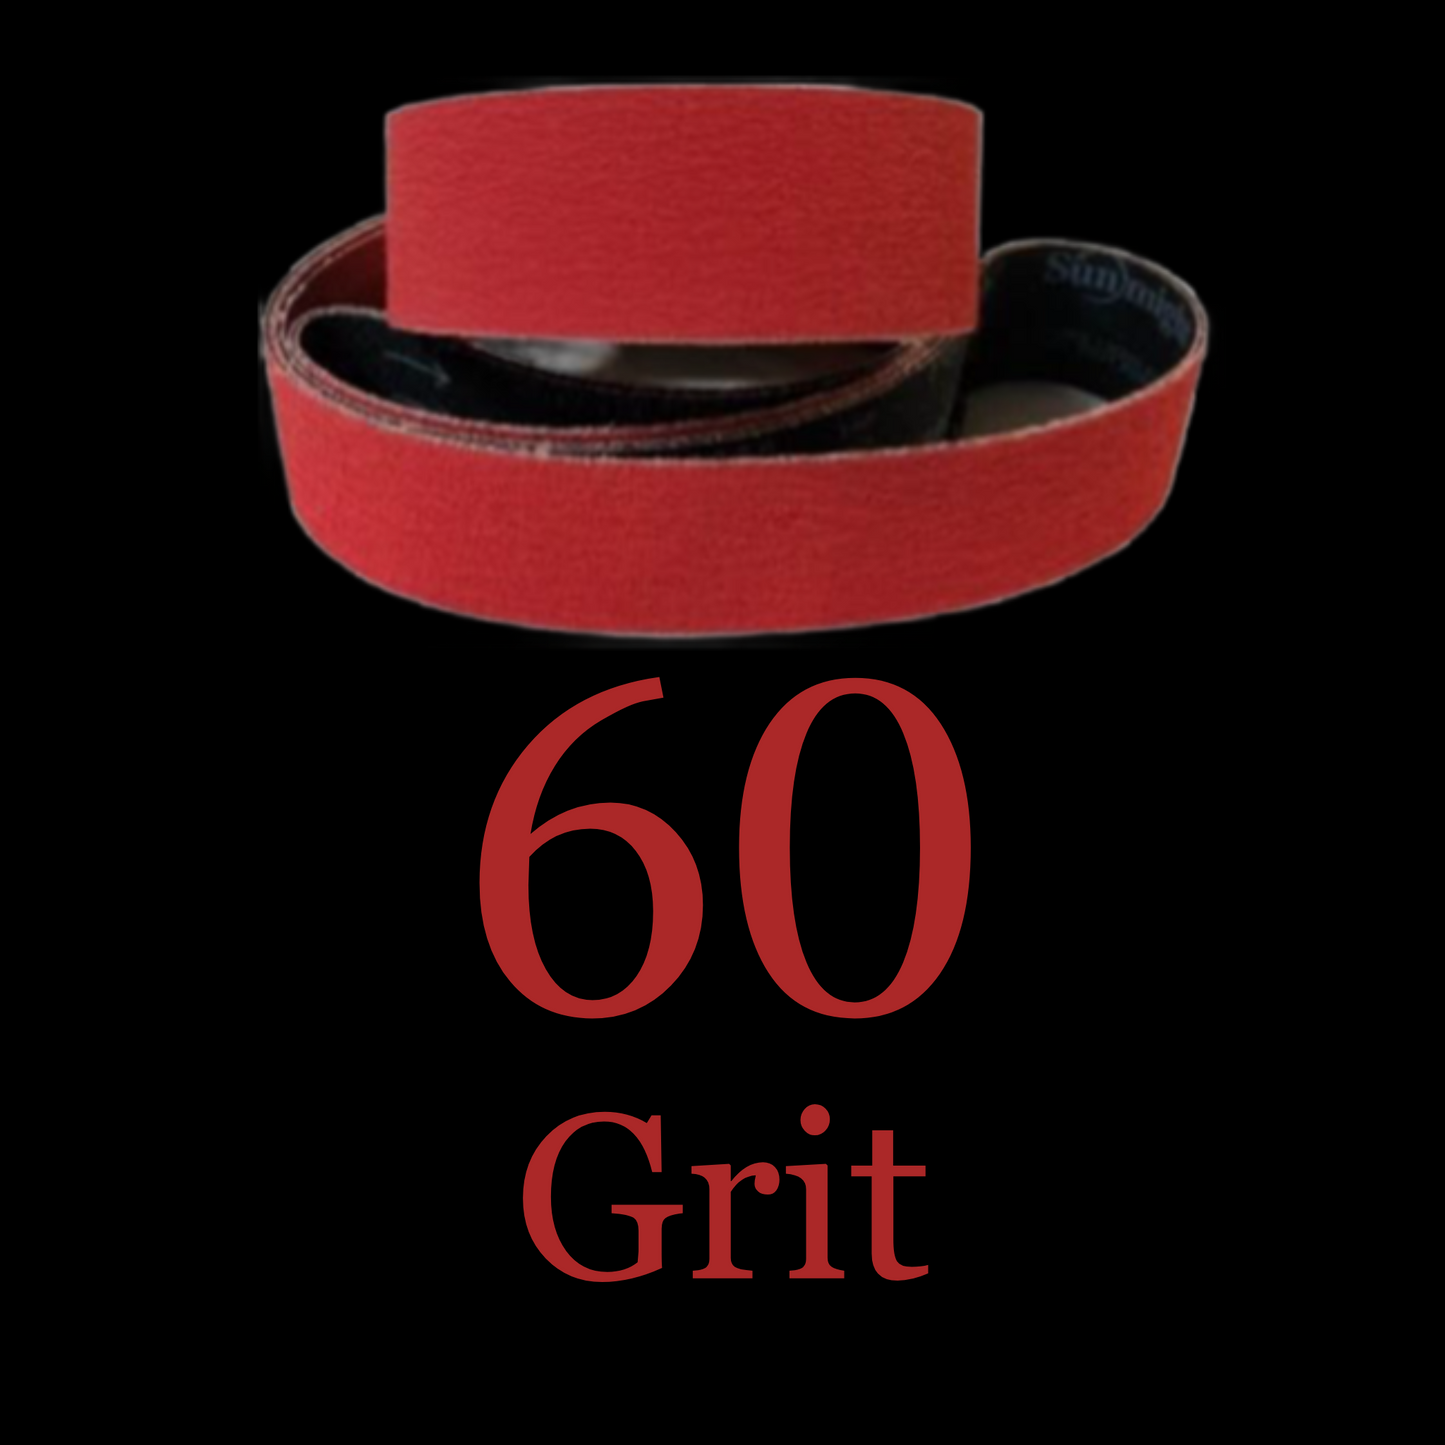 2” x 72” Premium Red Metal Eater Ceramic Belt 60 Grit